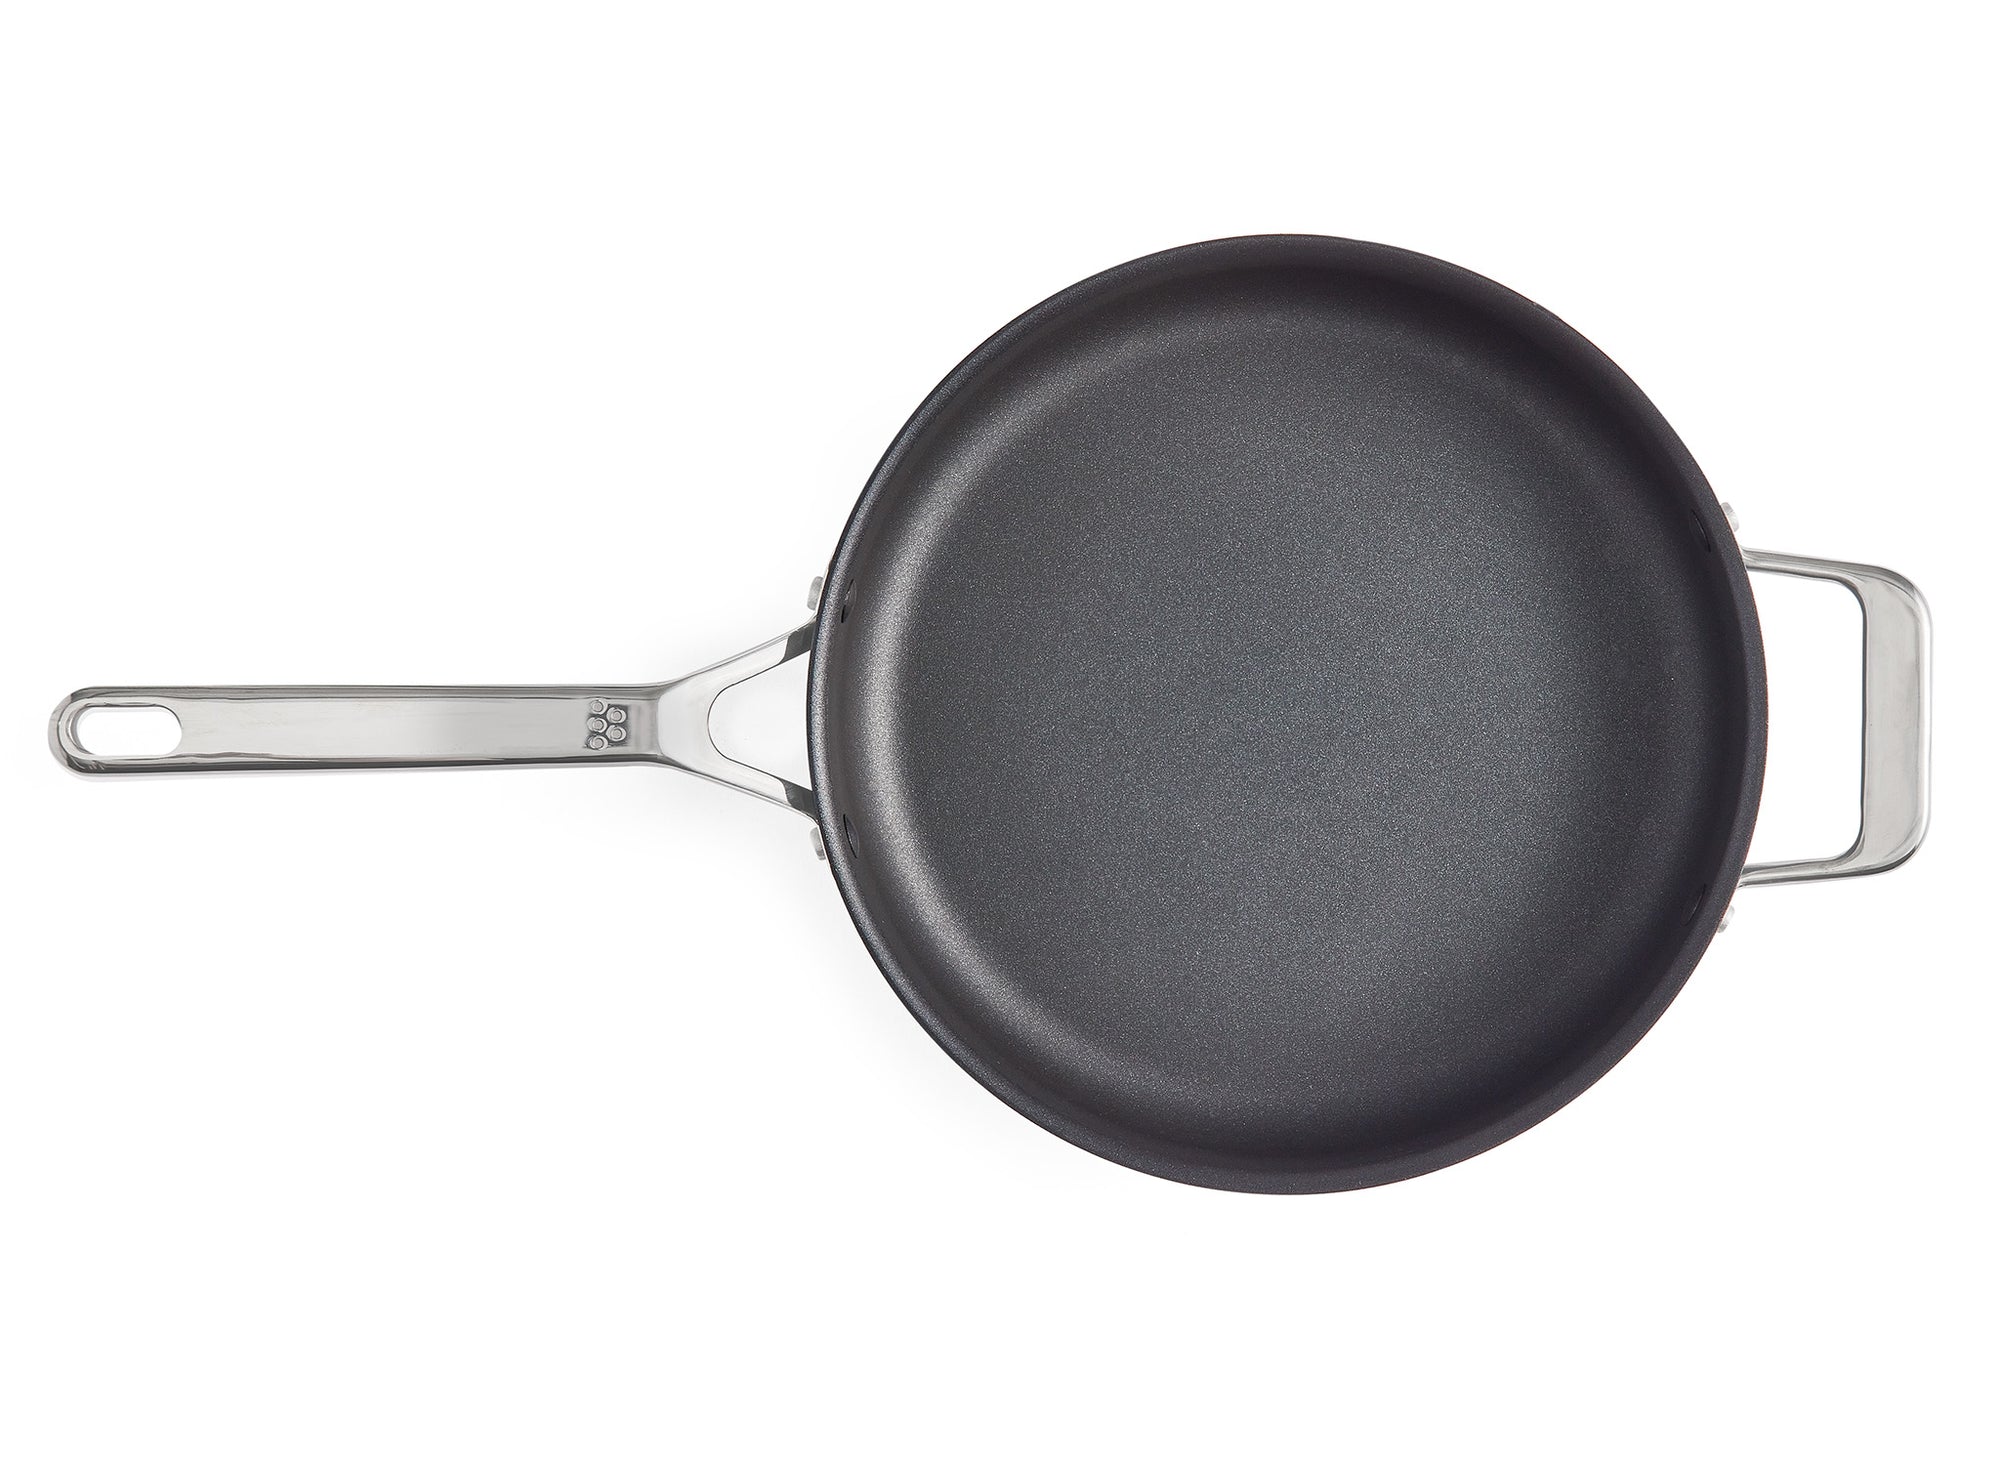 Misen Nonstick Saucier Pan